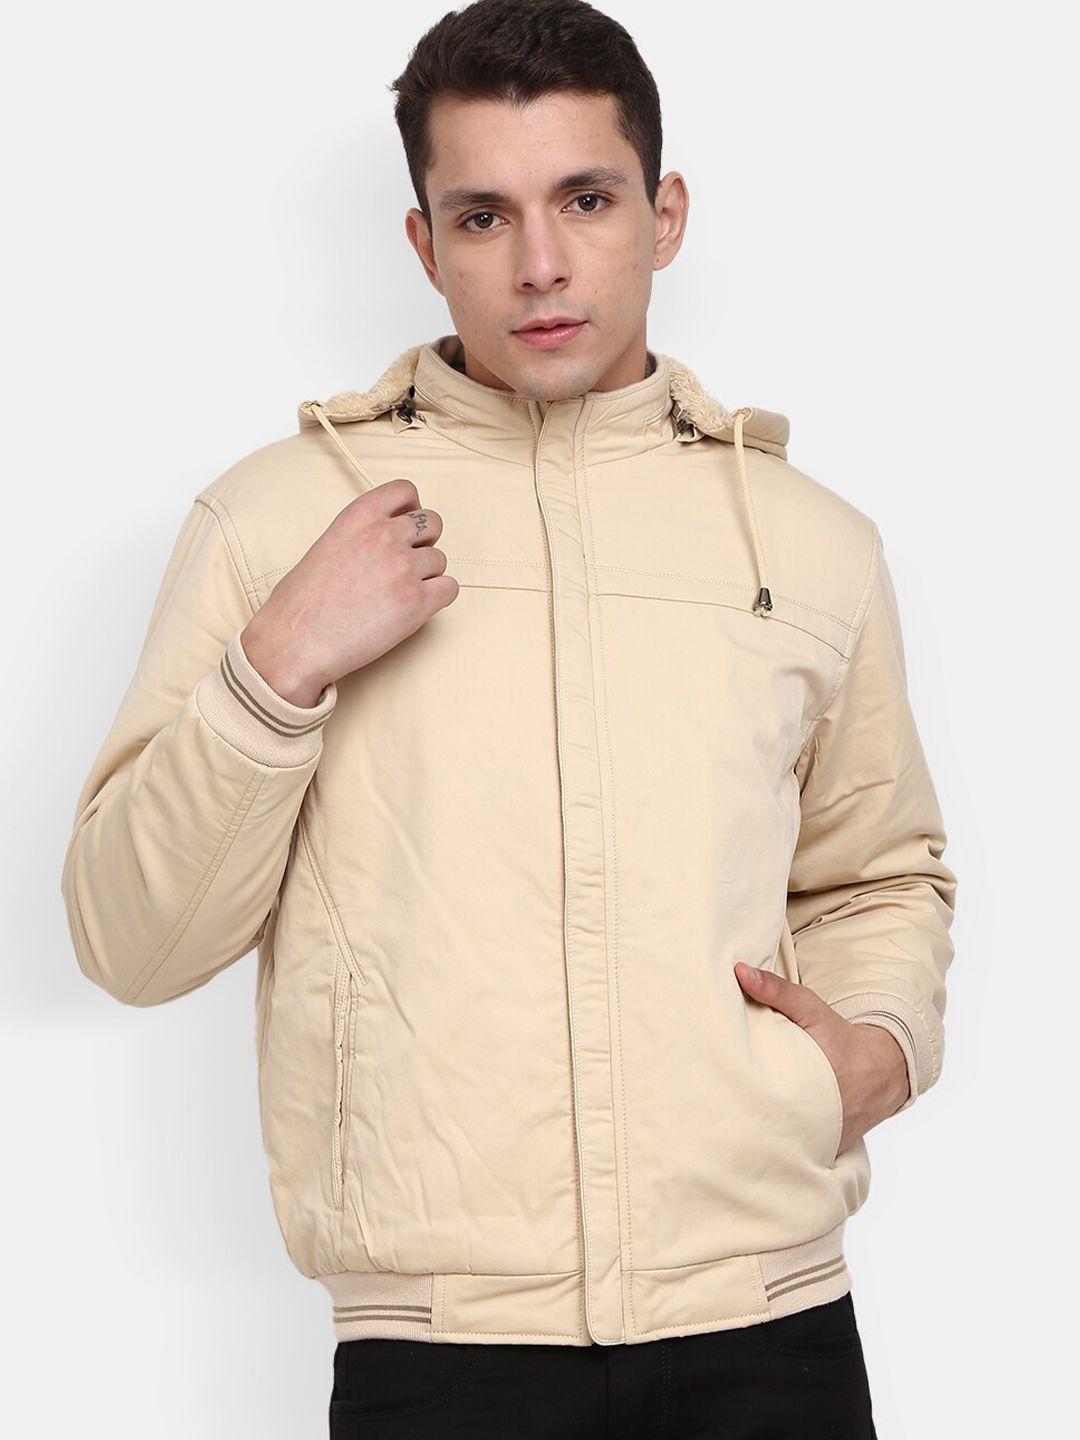 v-mart men beige lightweight bomber jacket